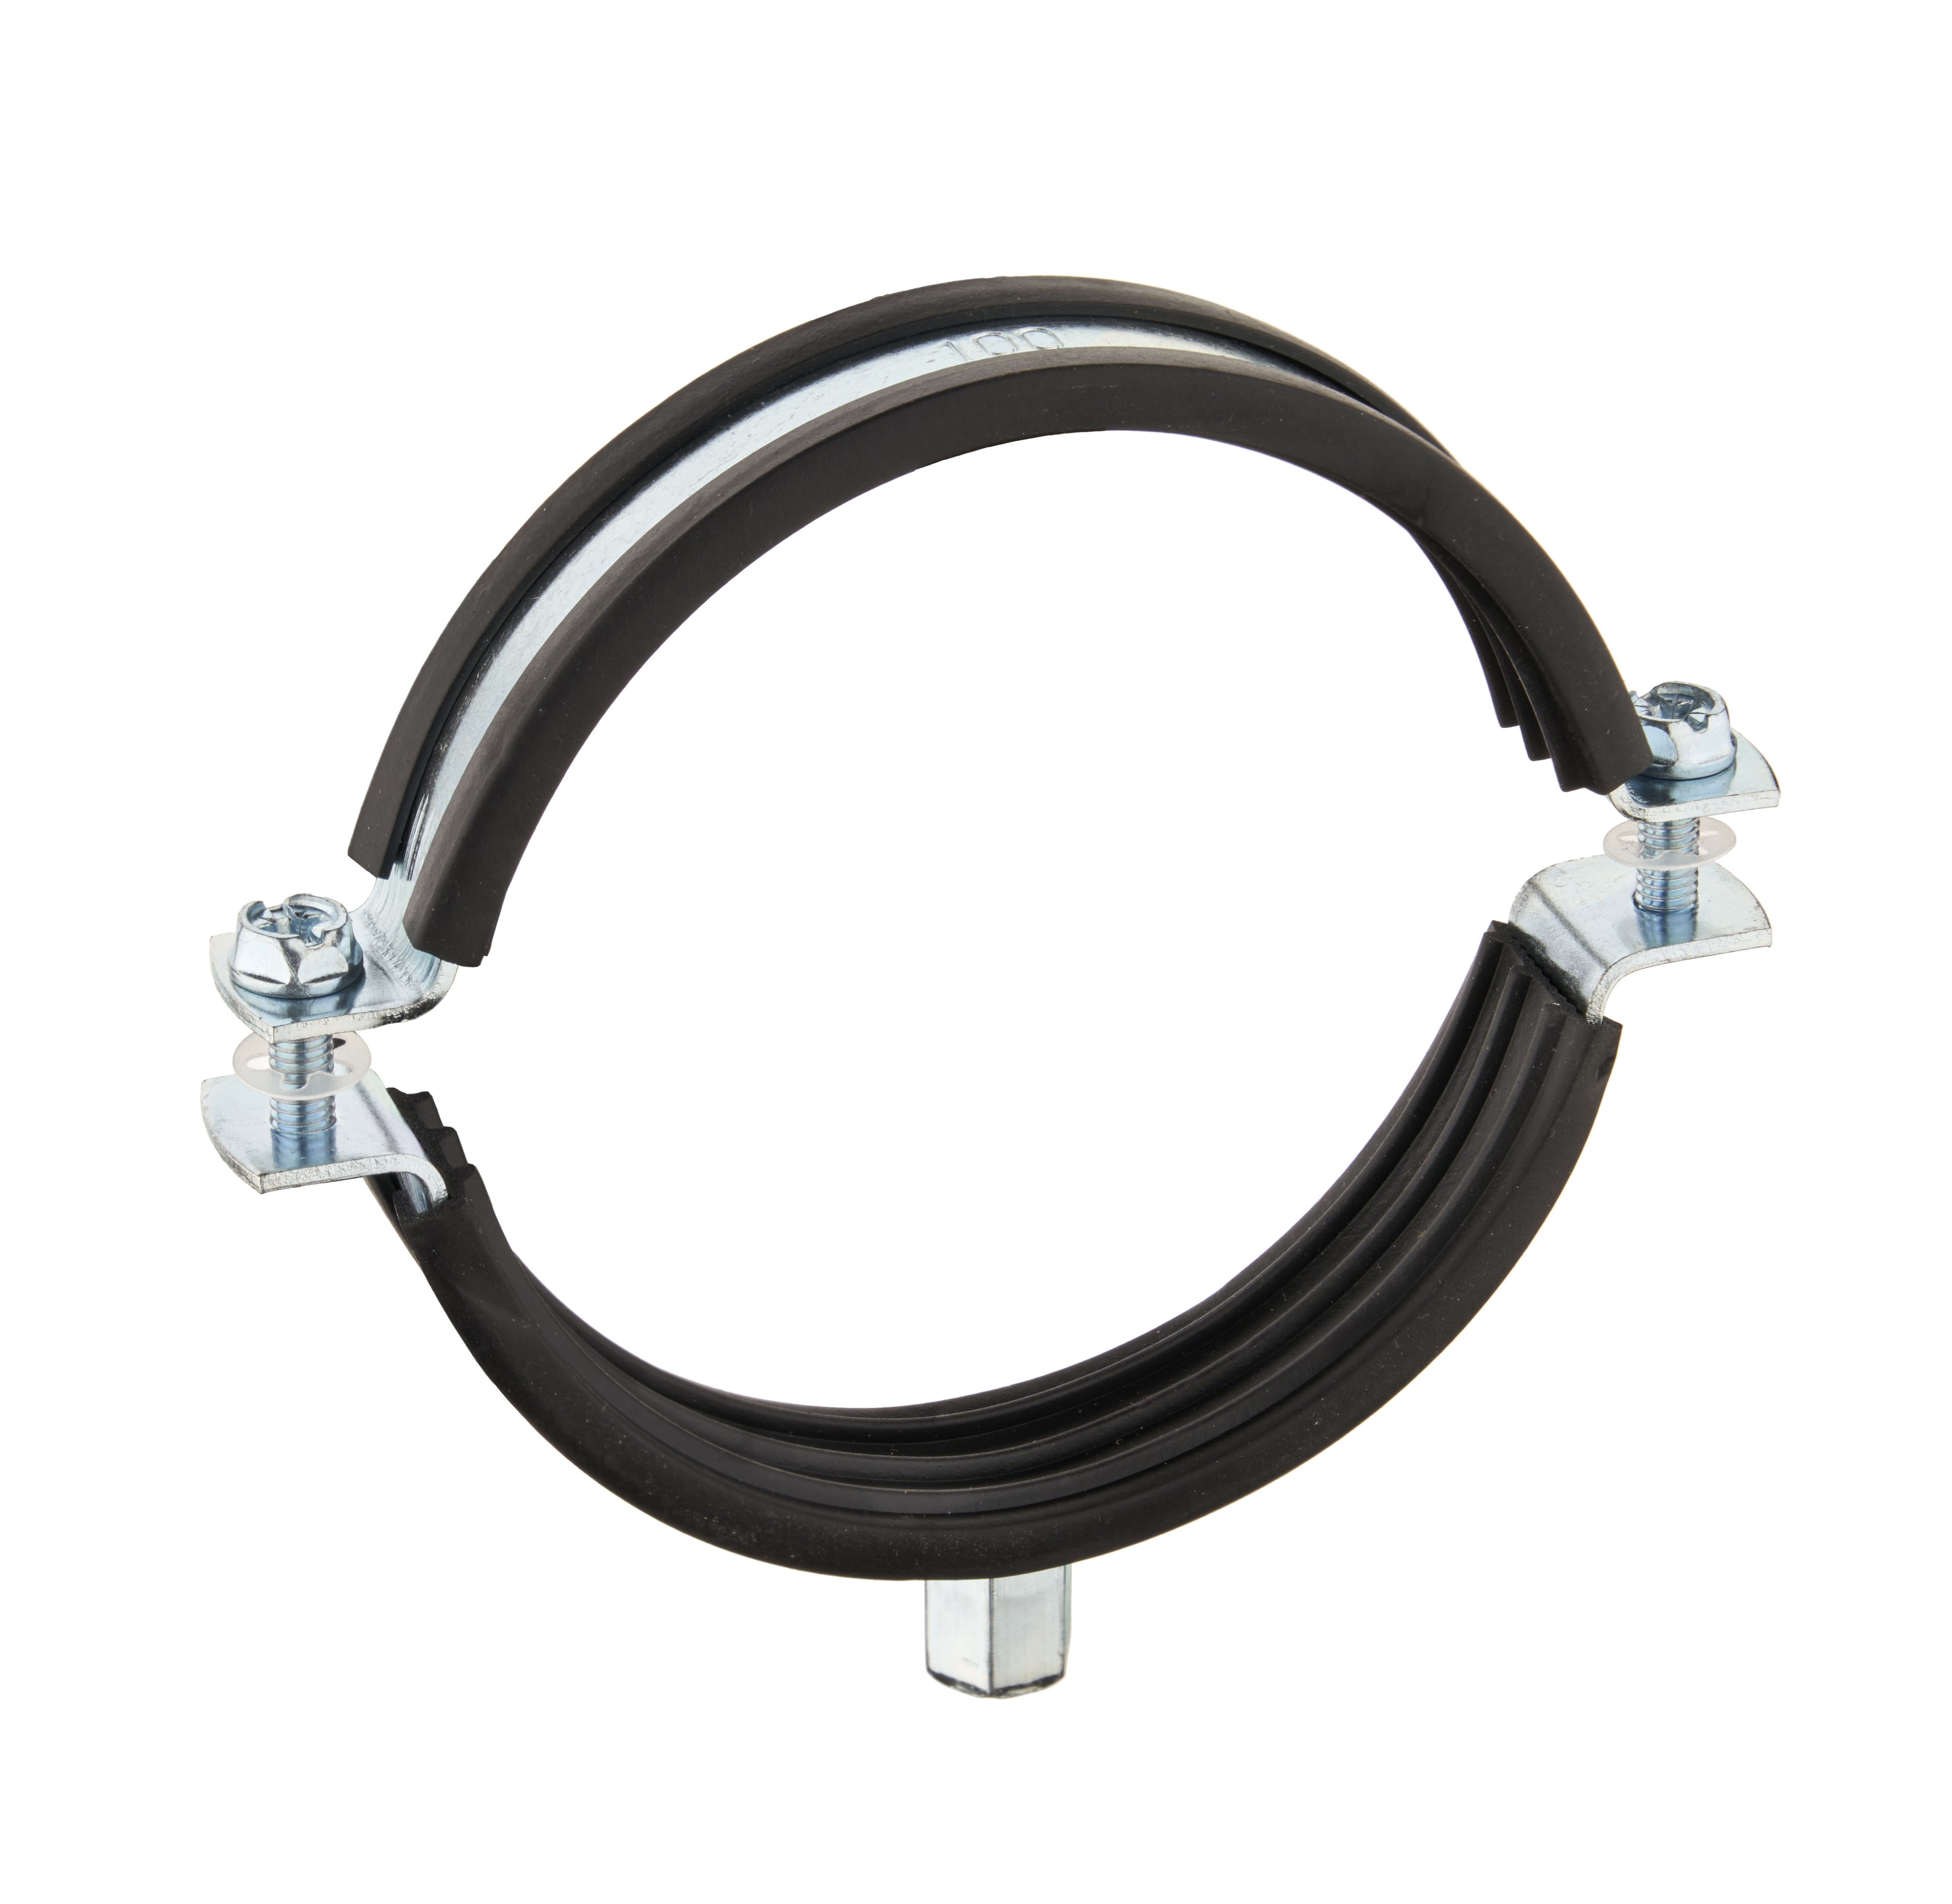 Systeme de suspension par cable HF Express N 2 (45kg) L=2m emb